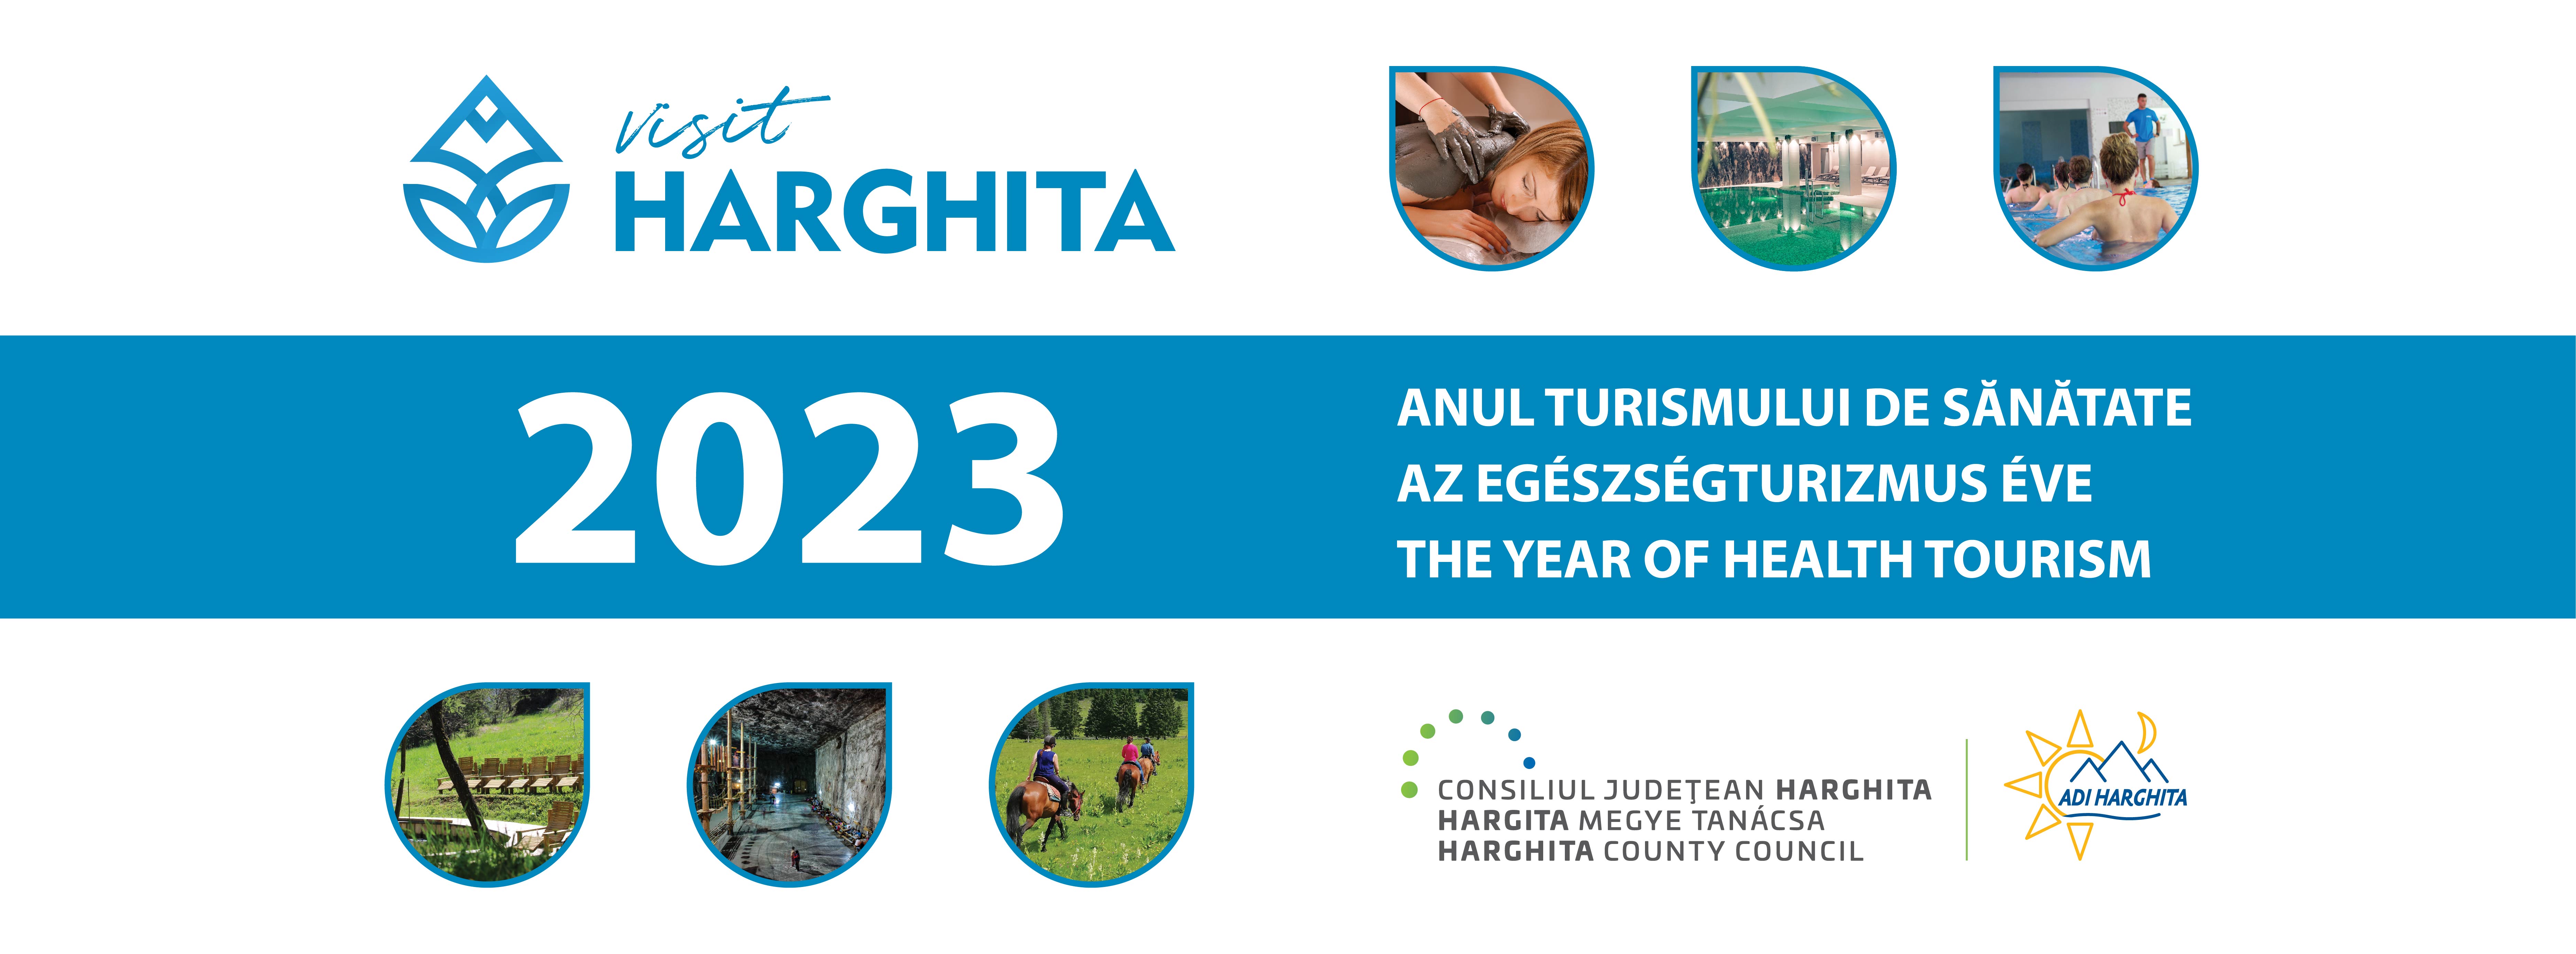 Visit Harghita – Anul turismului de sănătate